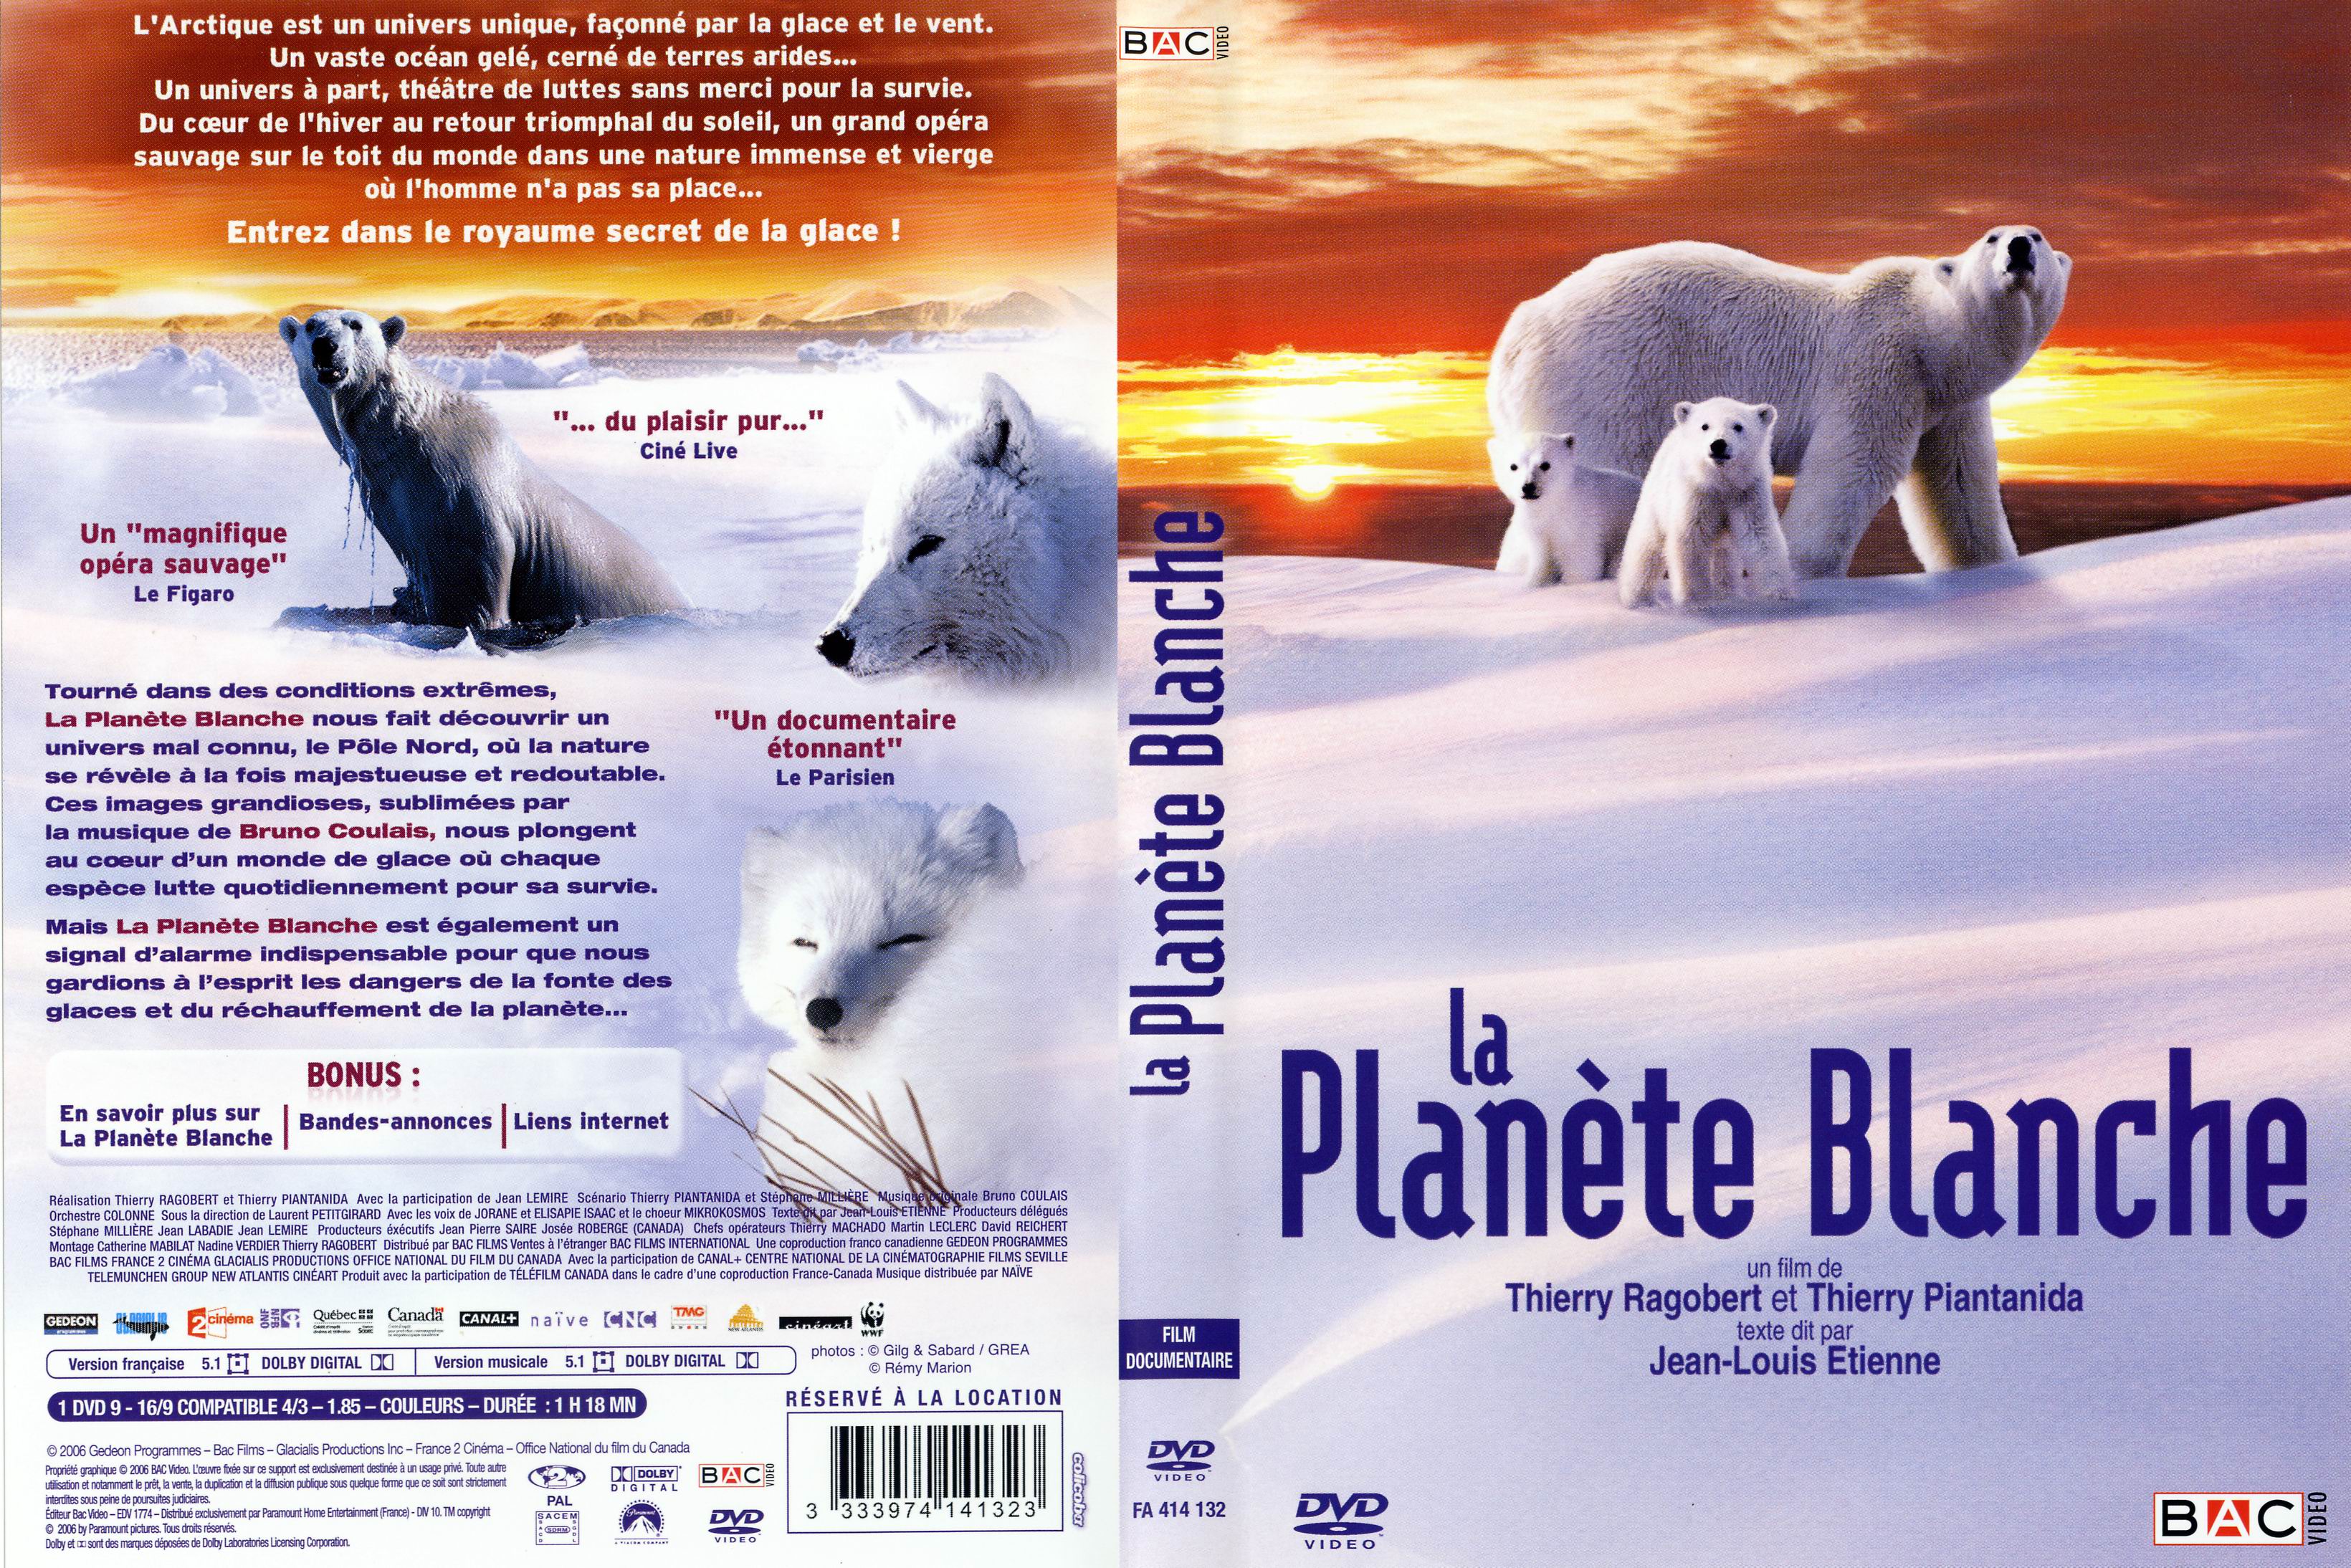 Jaquette DVD La planete blanche